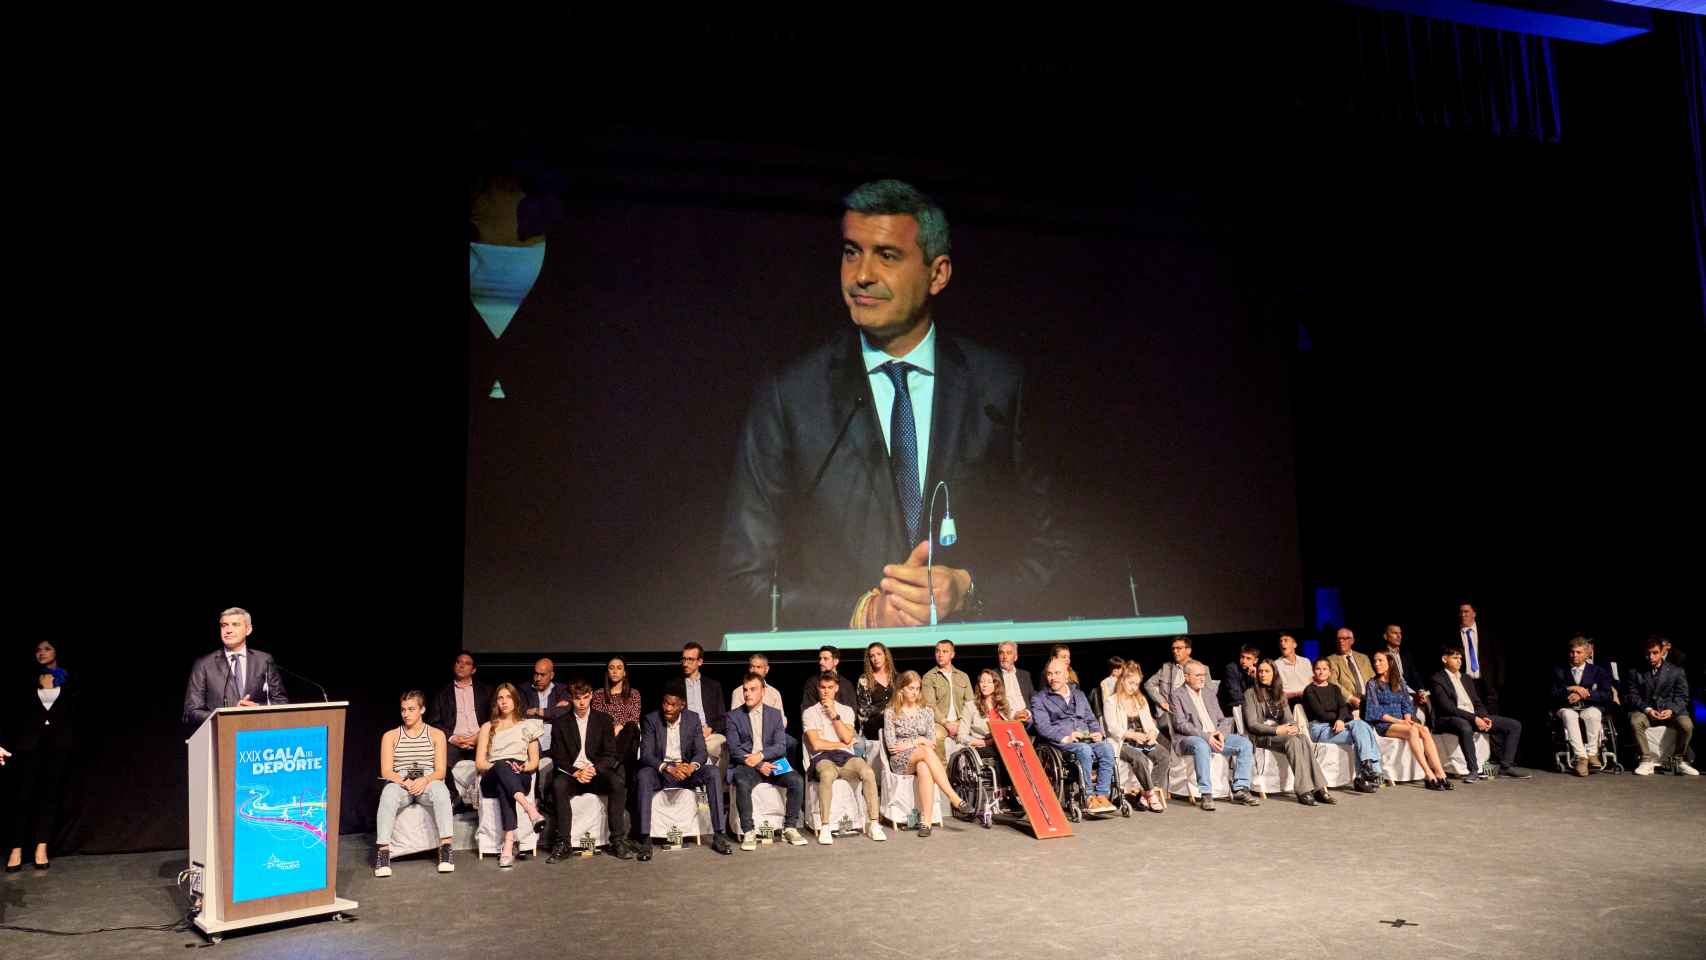 Álvaro Gutiérrez en la XXIX Gala del Deporte de la Diputación de Toledo. Foto: Diputación de Toledo.